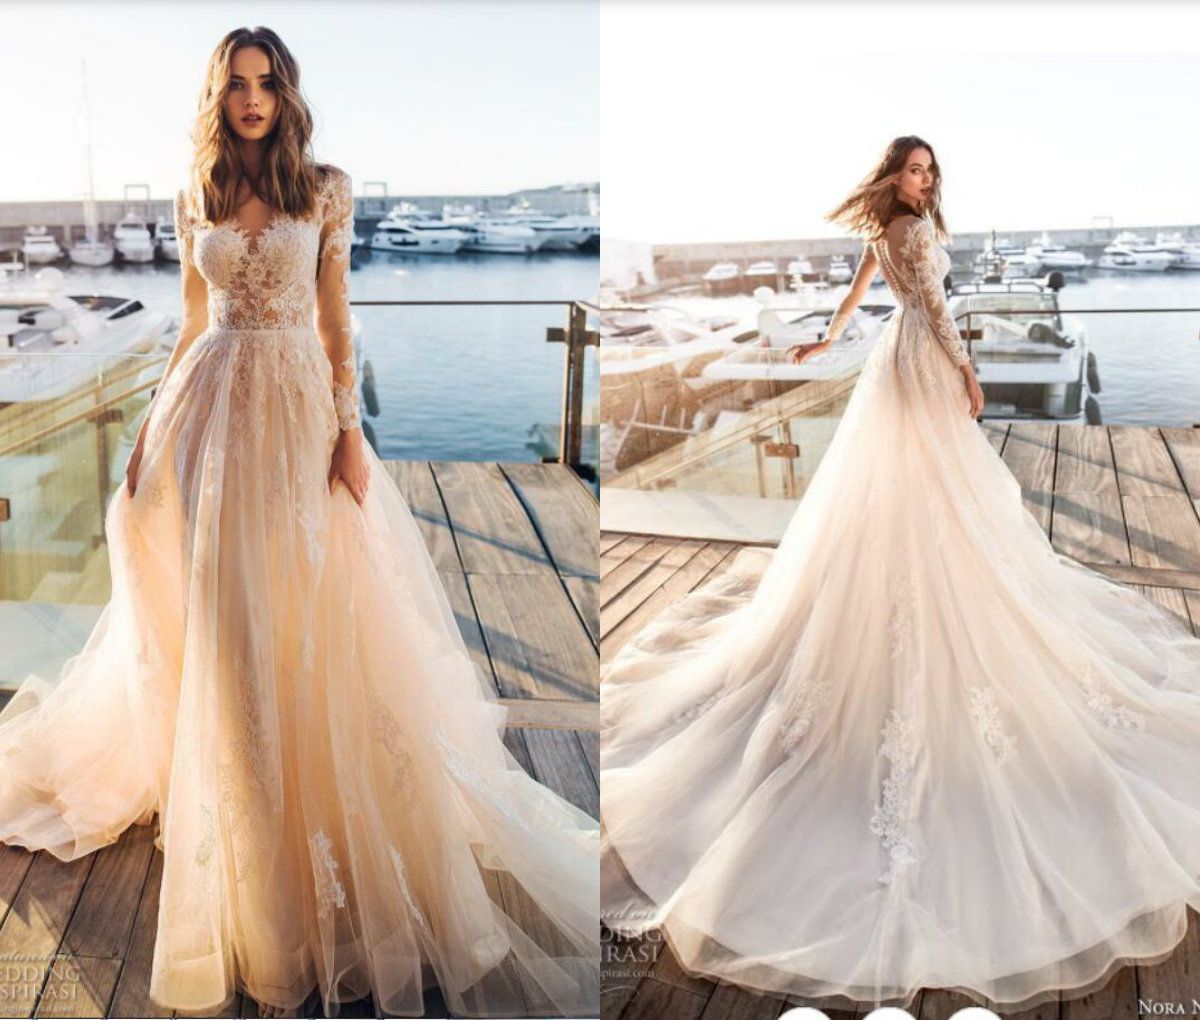 summer dresses for weddings 2019